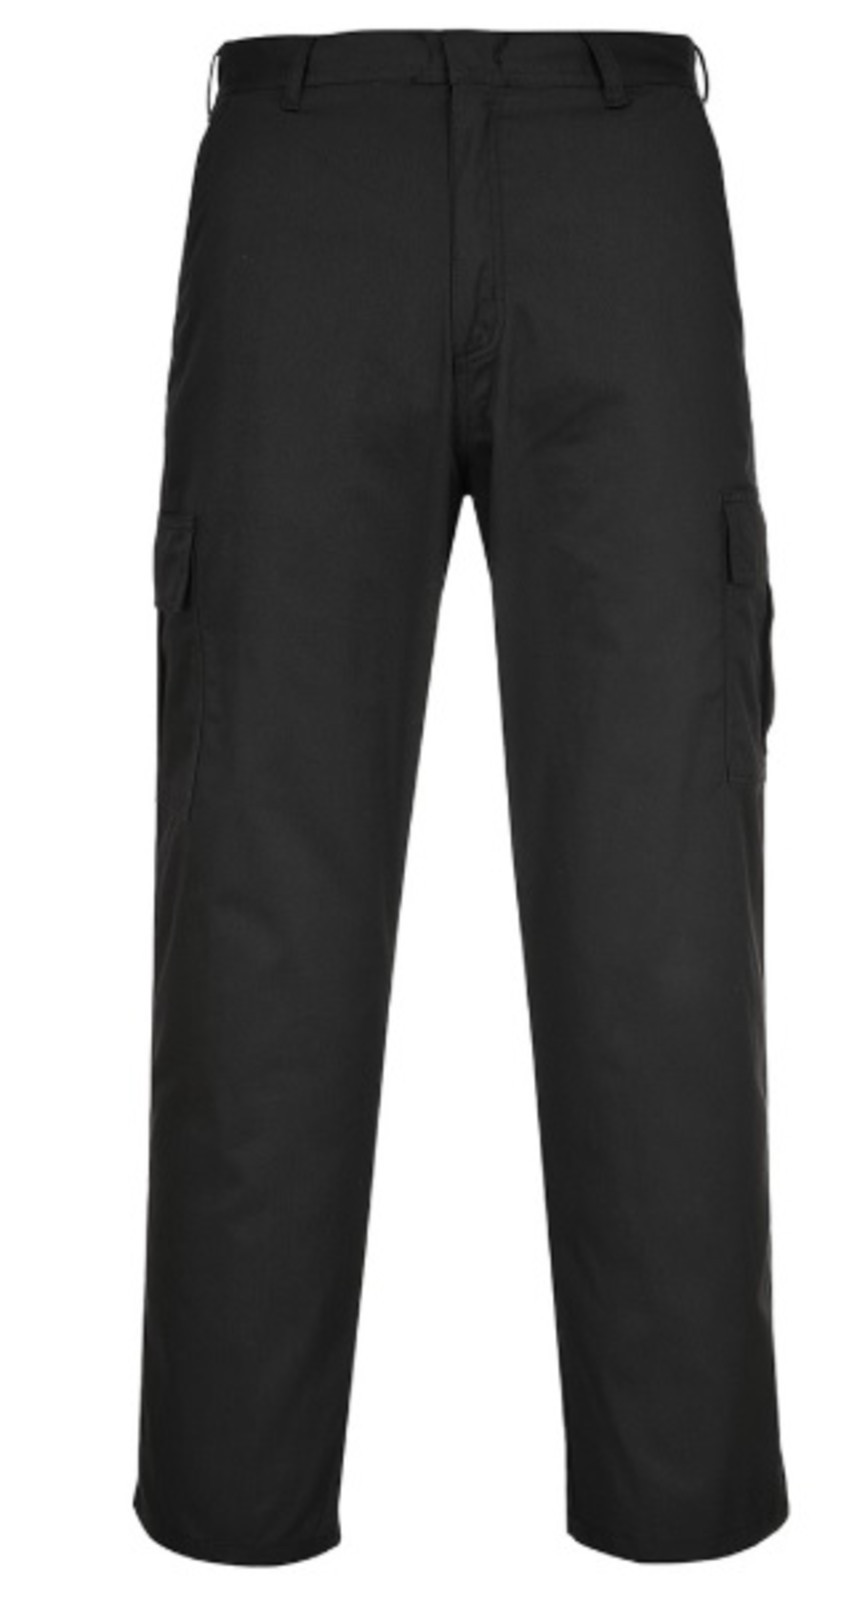 Pracovné nohavice Portwest Combat C701 - veľkosť: 44, farba: čierna